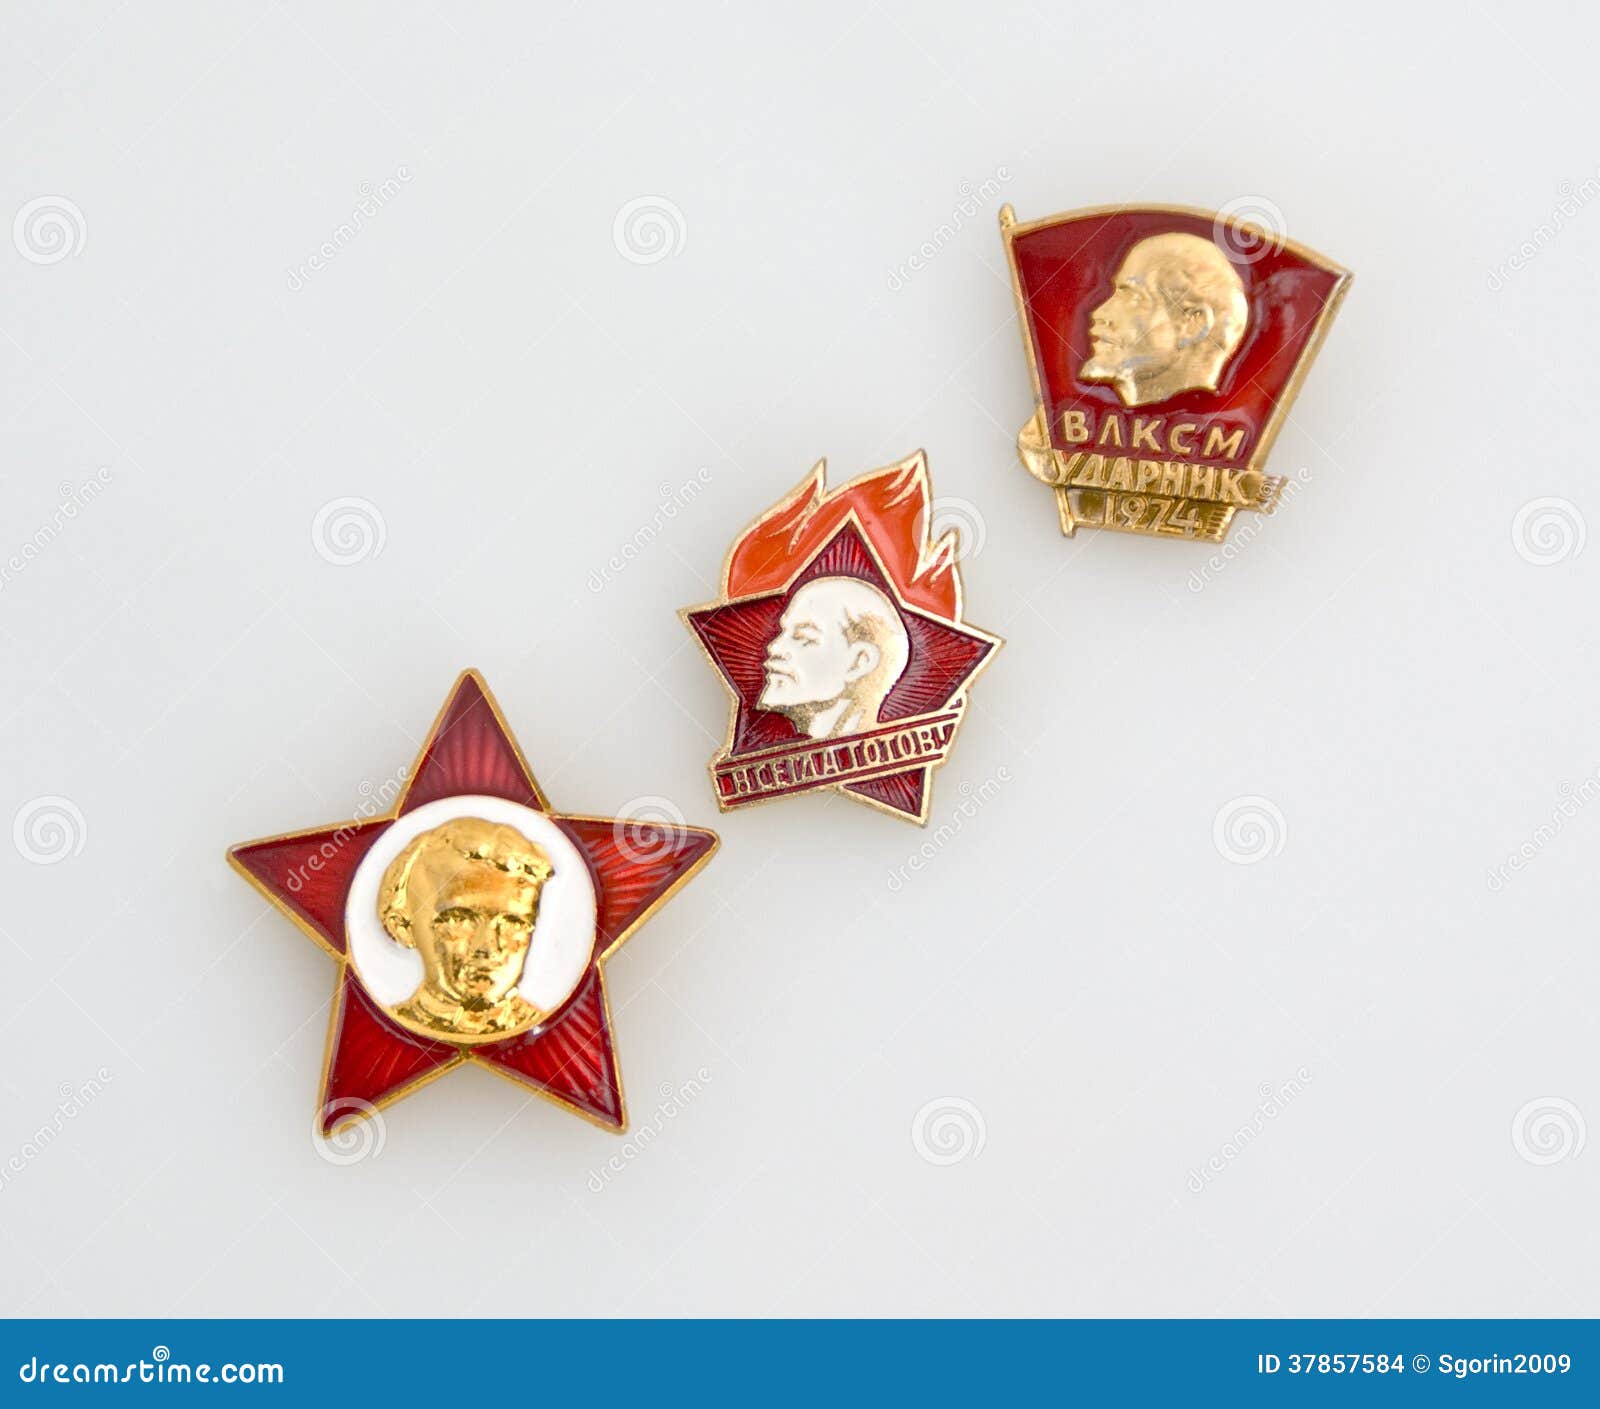 KOMSOMOL AWARD COMMUNIST GOLD BADGE RUSSIAN SOVIET USSR PIN PIONEER 1970s 